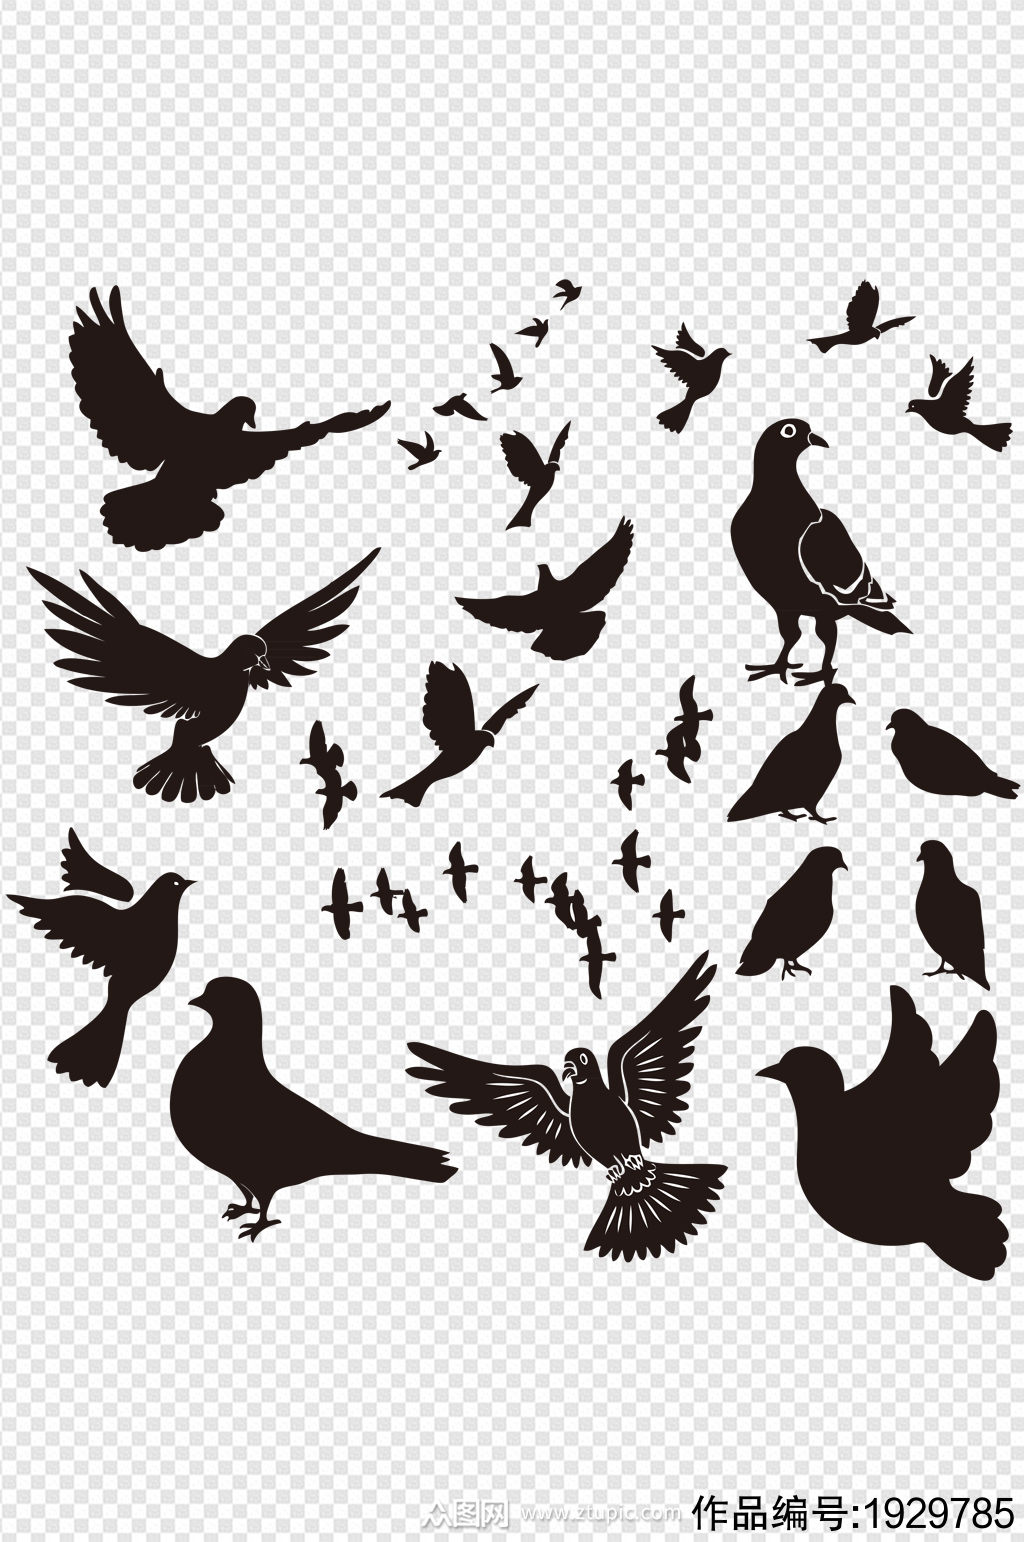 鸽子和平鸽手绘黑白剪影-设计元素素材下载-众图网